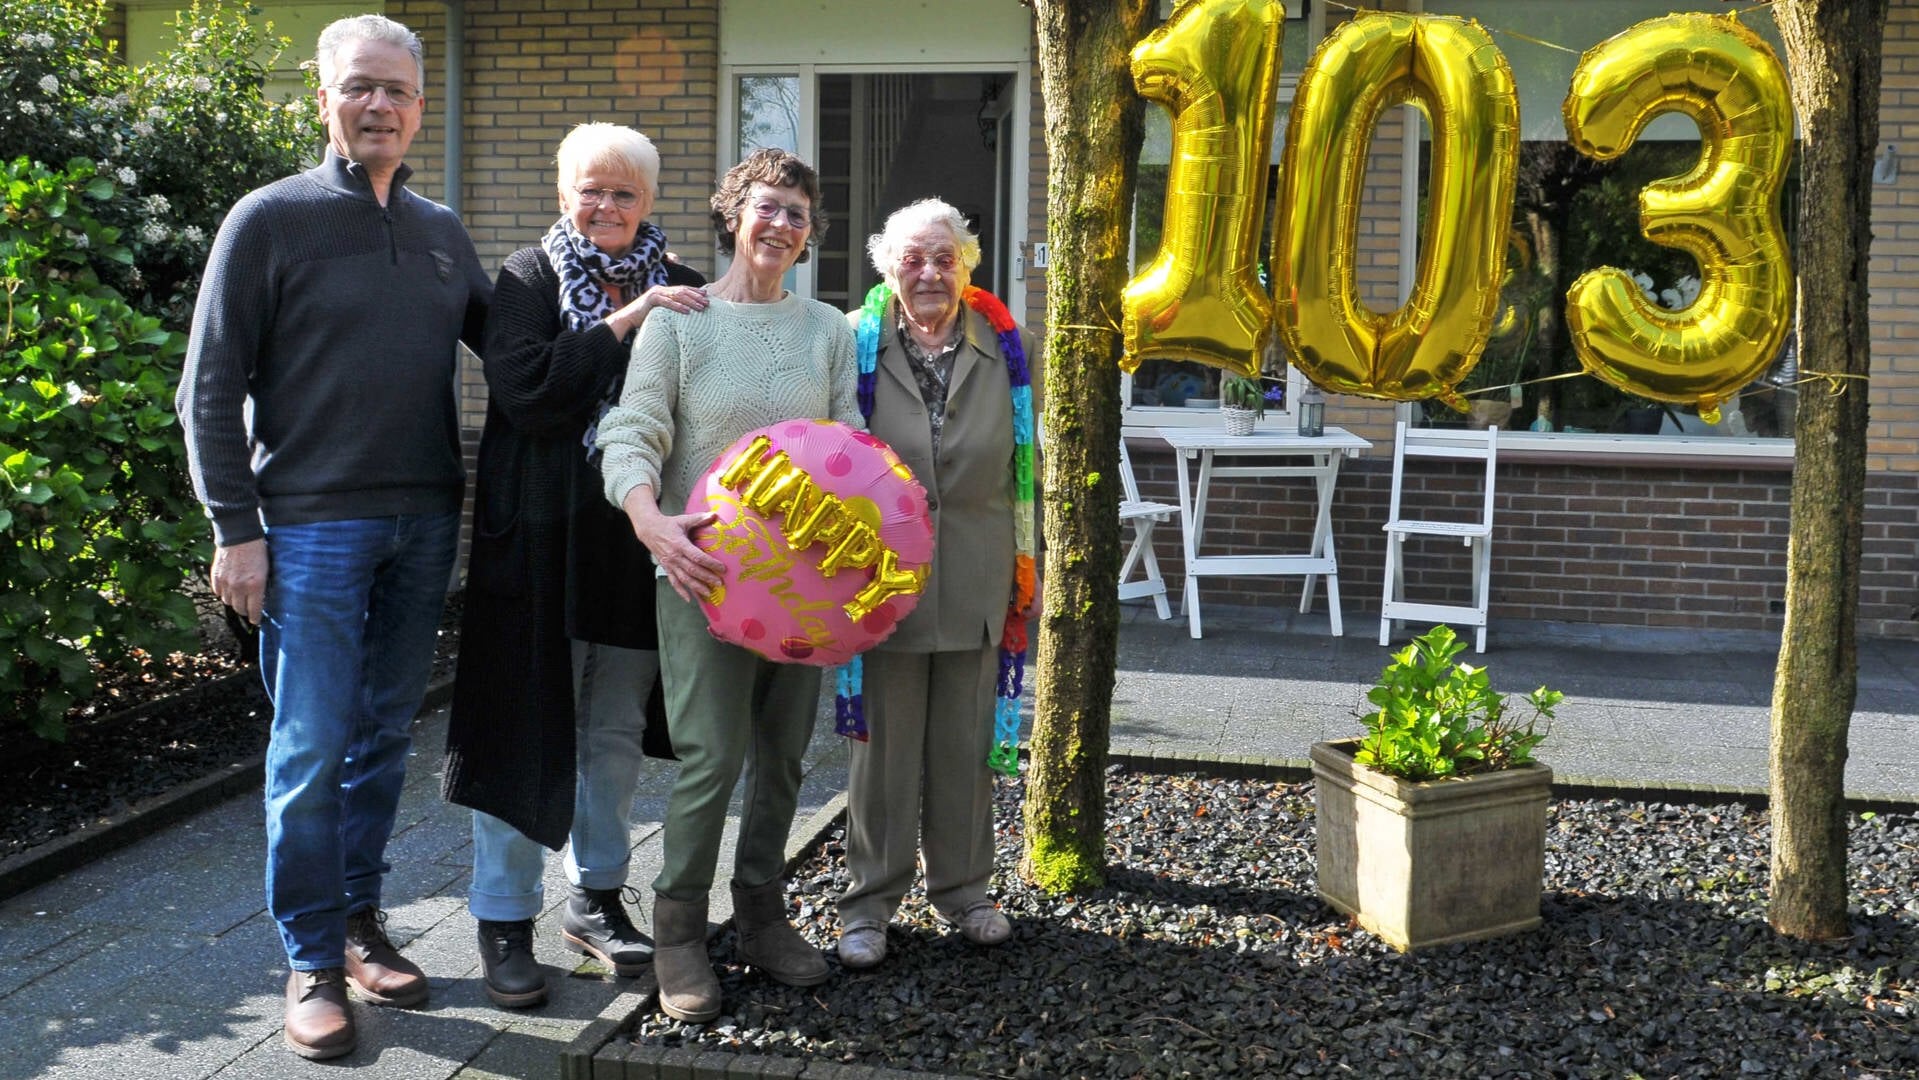 De 103-jarige Martje Uilhoorn-Bos met haar dochter en andere nazaten. 